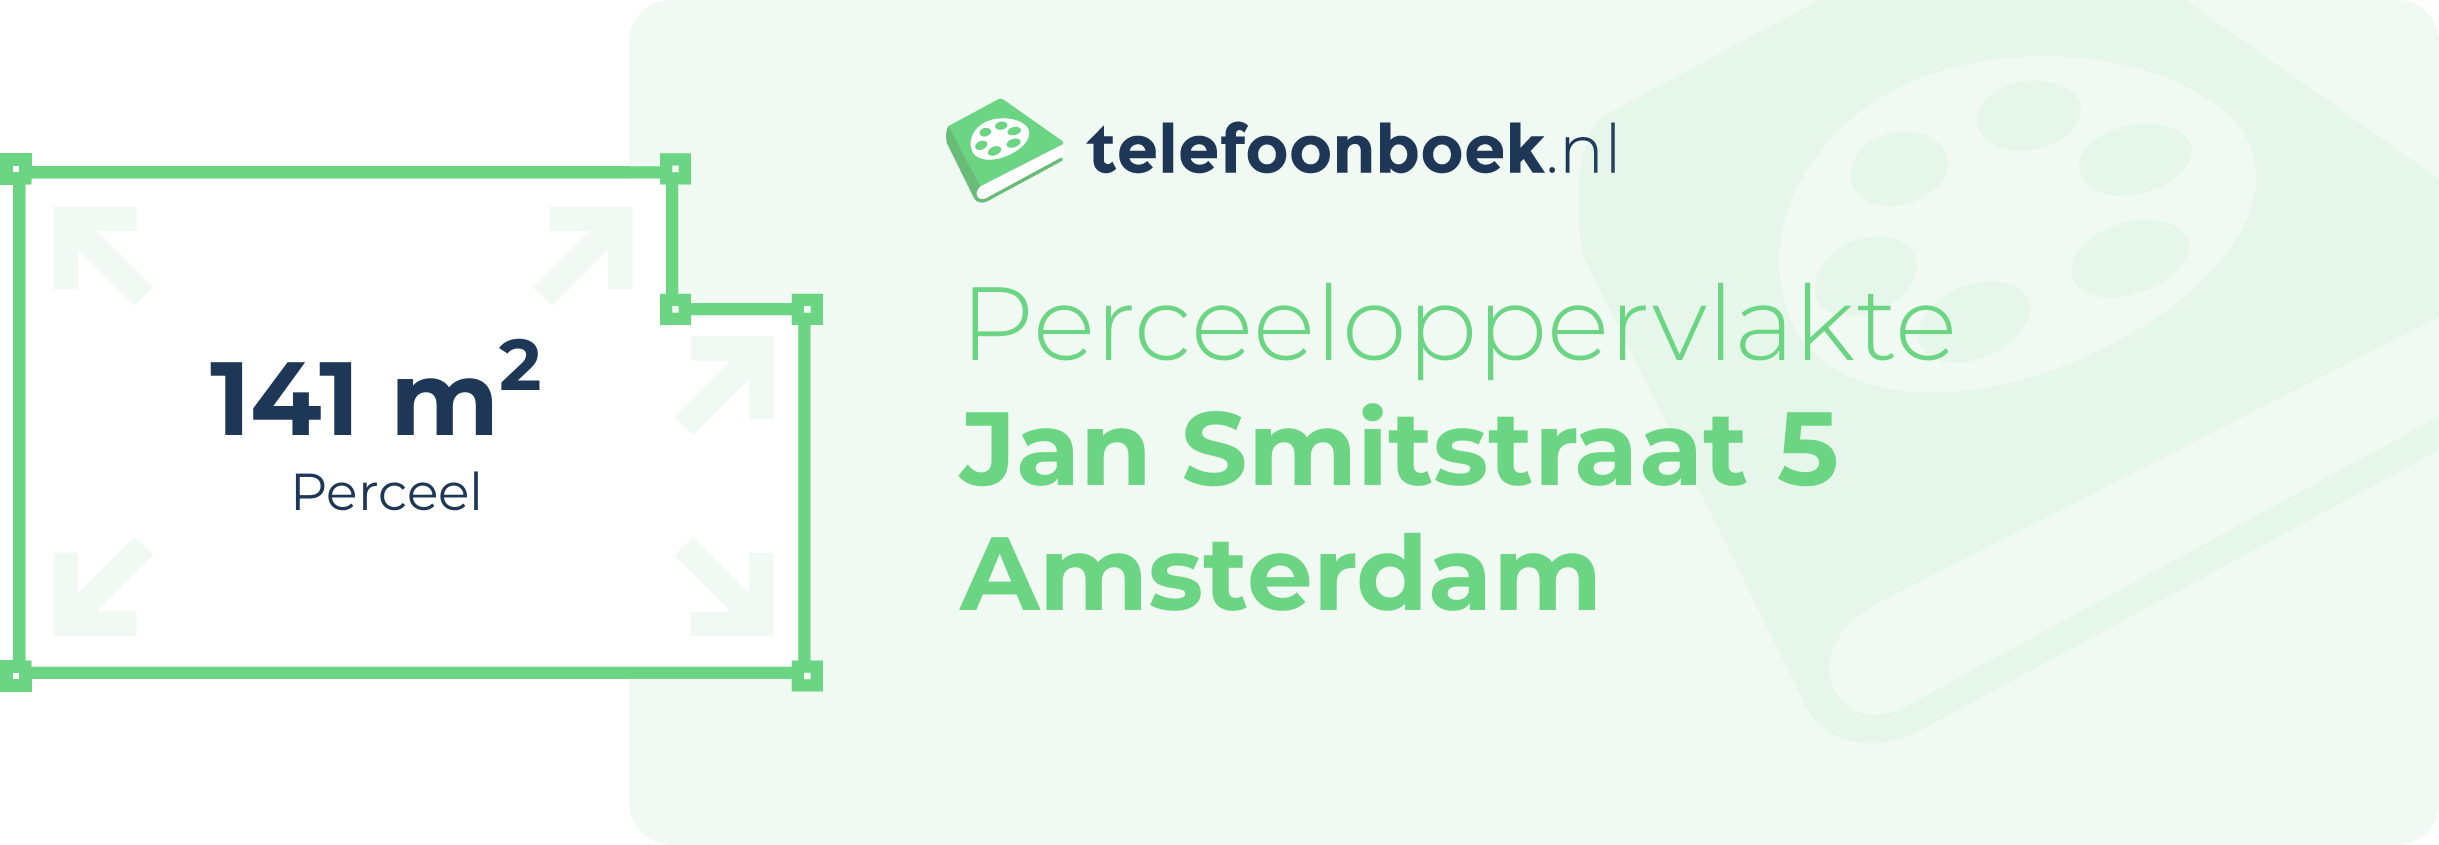 Perceeloppervlakte Jan Smitstraat 5 Amsterdam